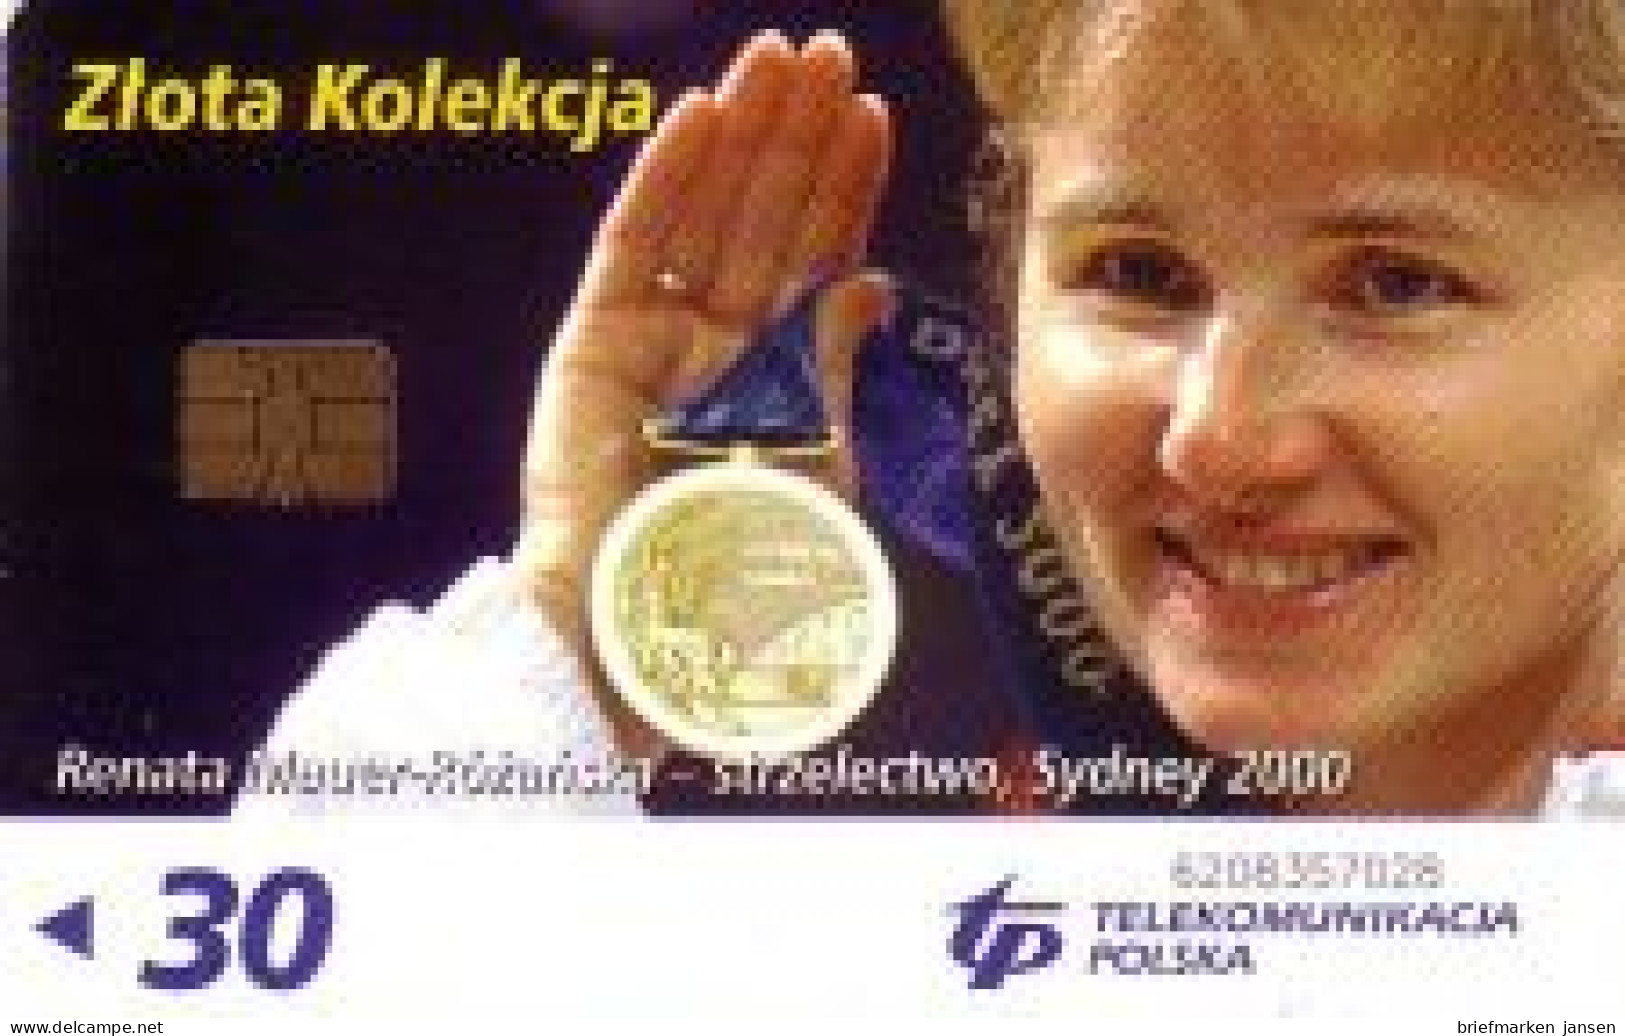 Telefonkarte Polen, Renata Mauer-Rózanska-strzelectwo, Sydney 2000, 30 - Unclassified